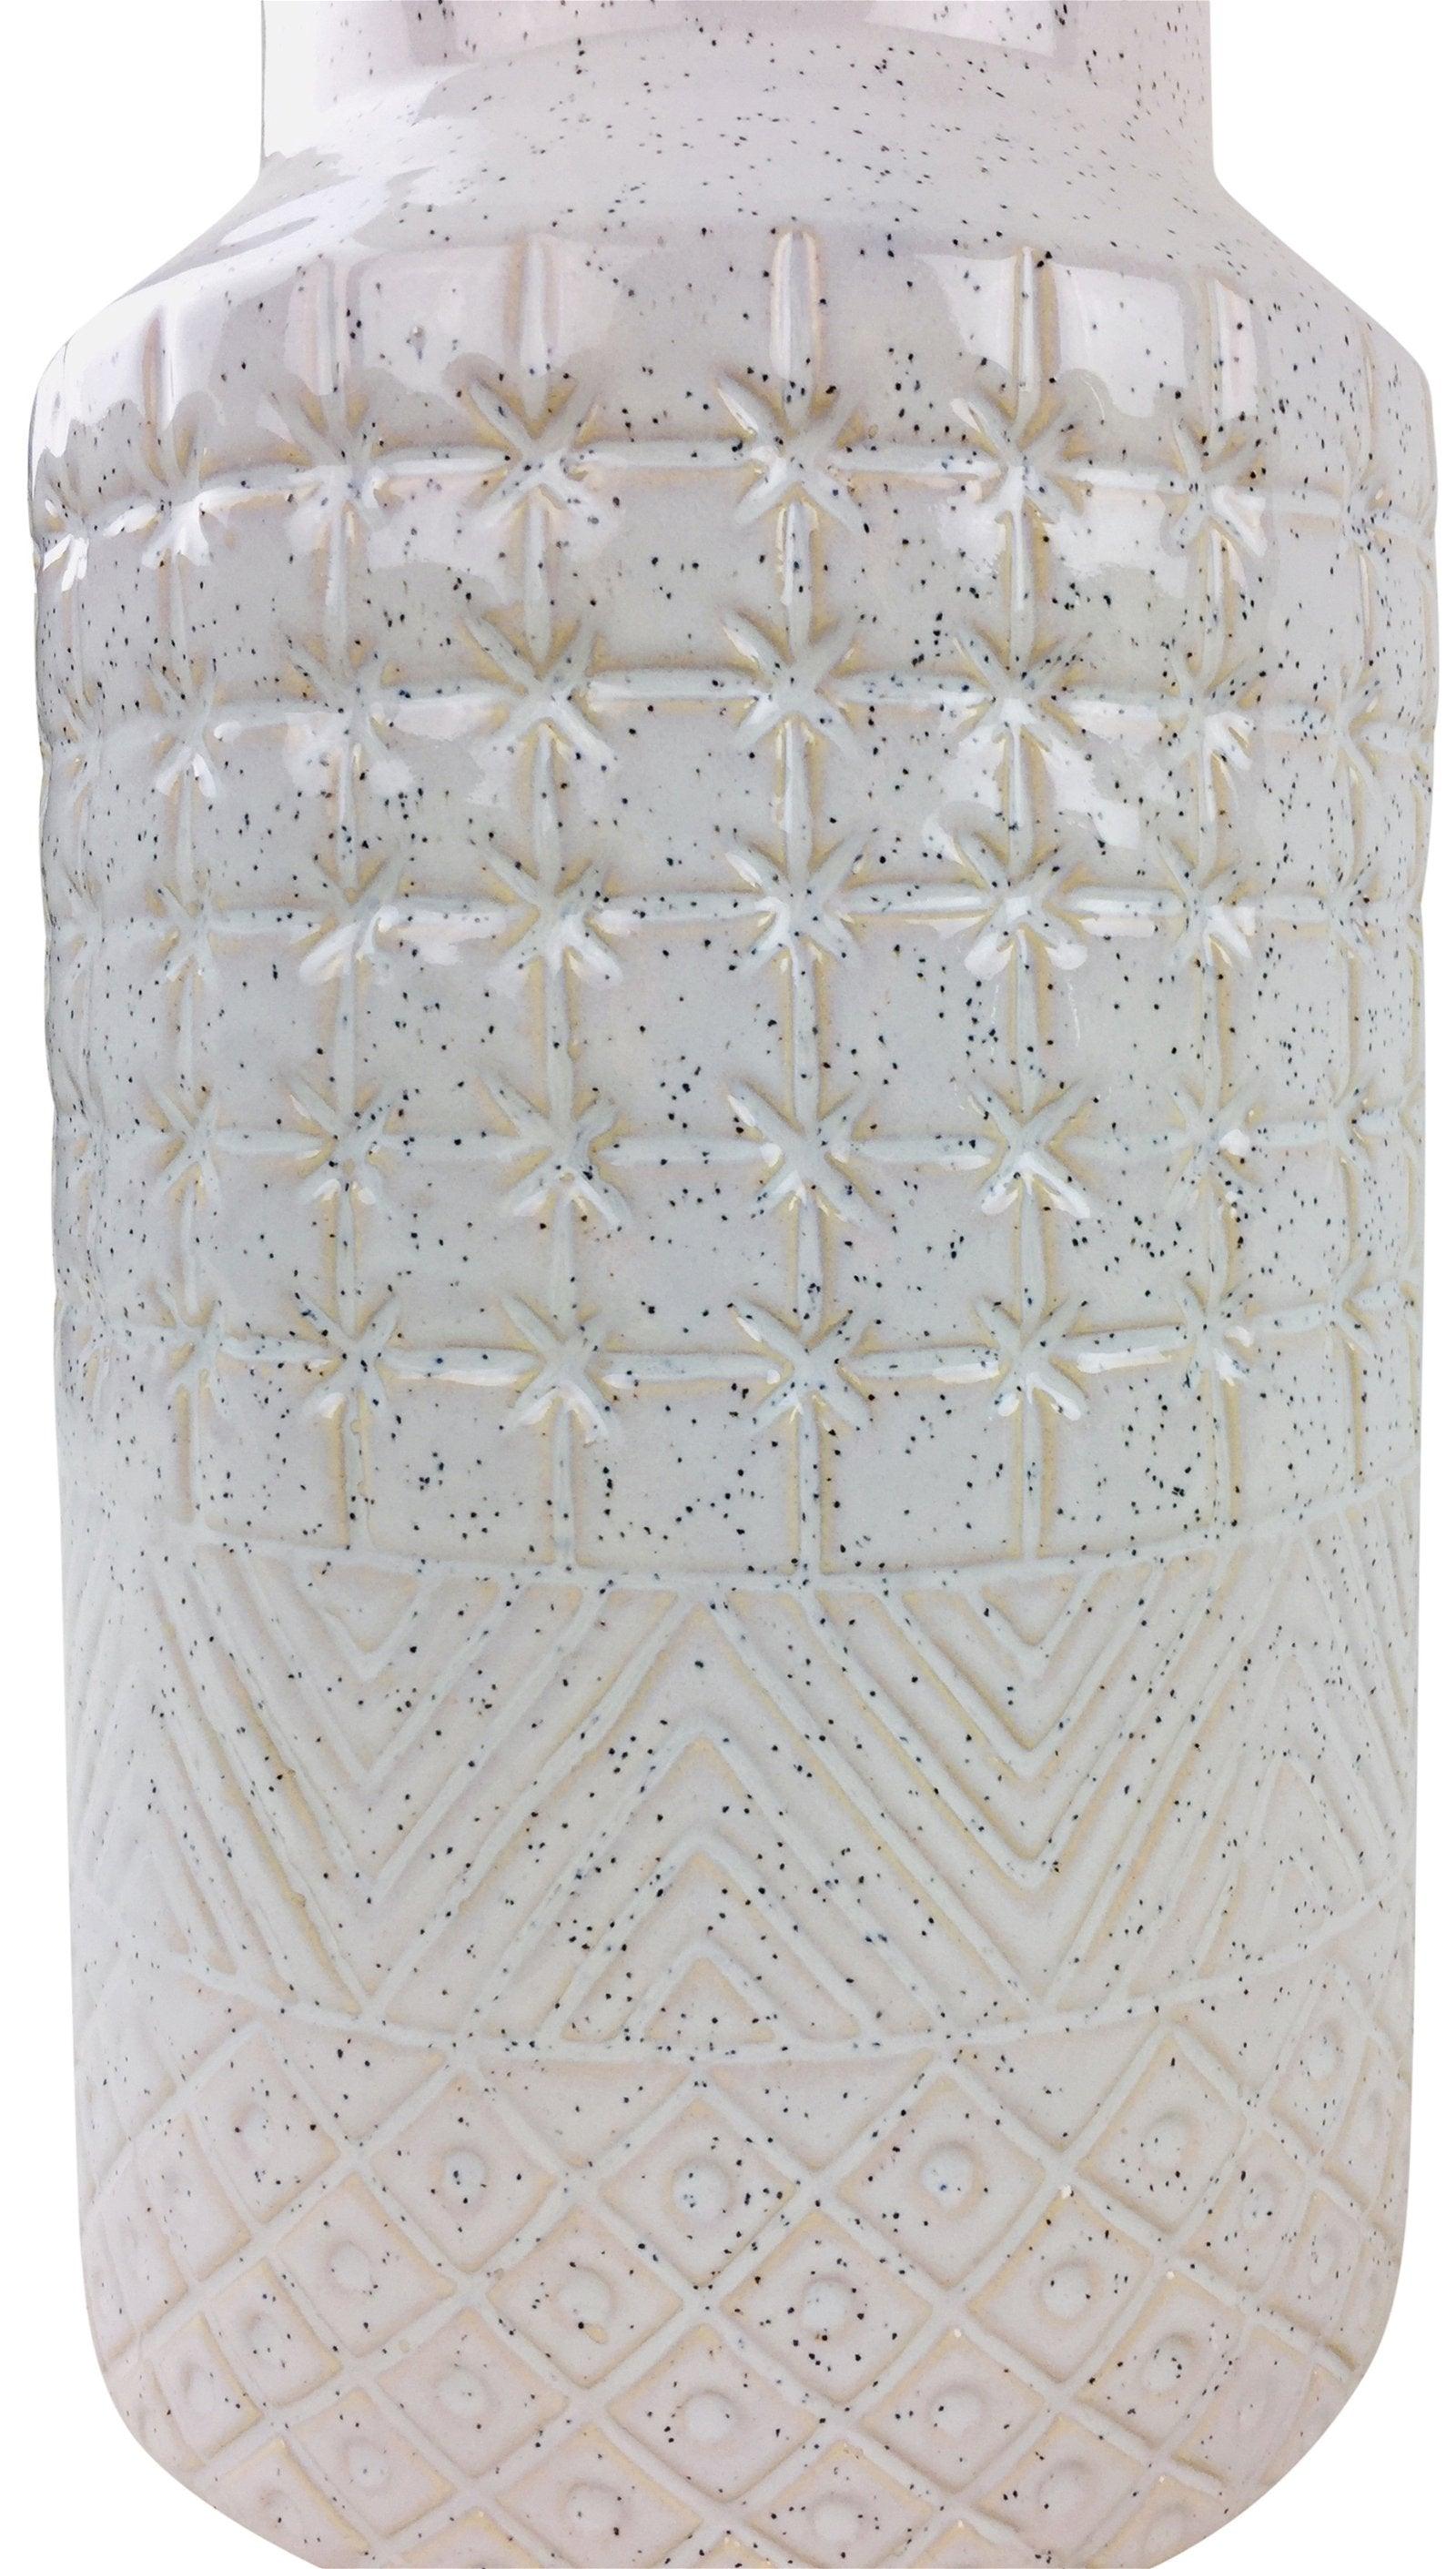 View White Star Textured Stoneware Vase 30cm information